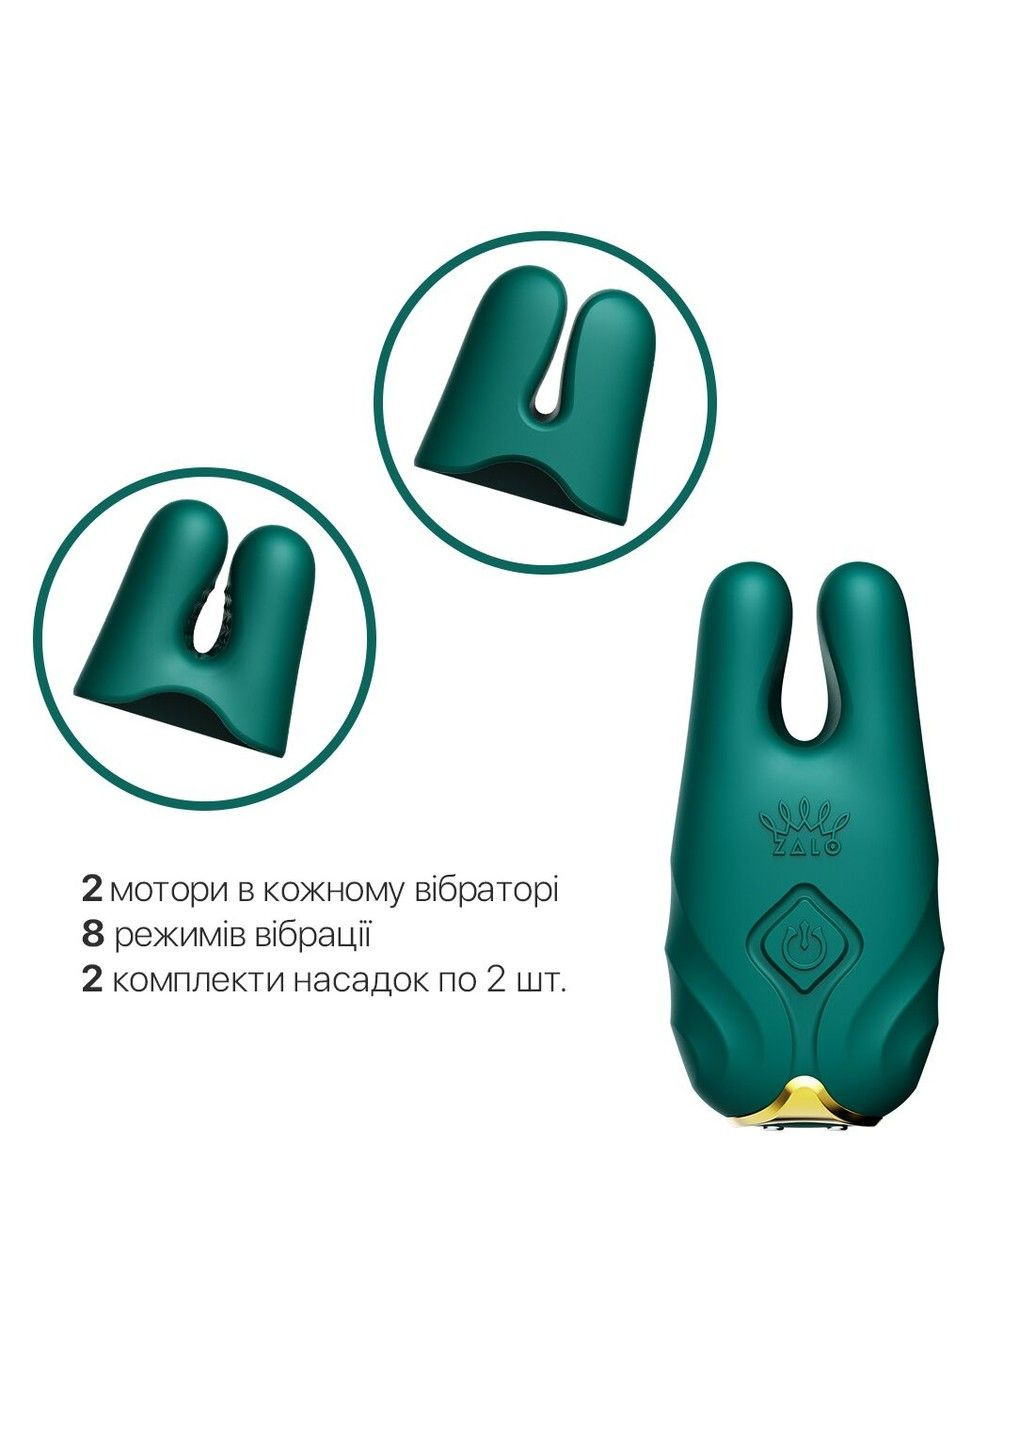 Смартвибратор для груди - Nave Turquoise Green, пульт ДУ, работа через приложение Zalo (292786374)